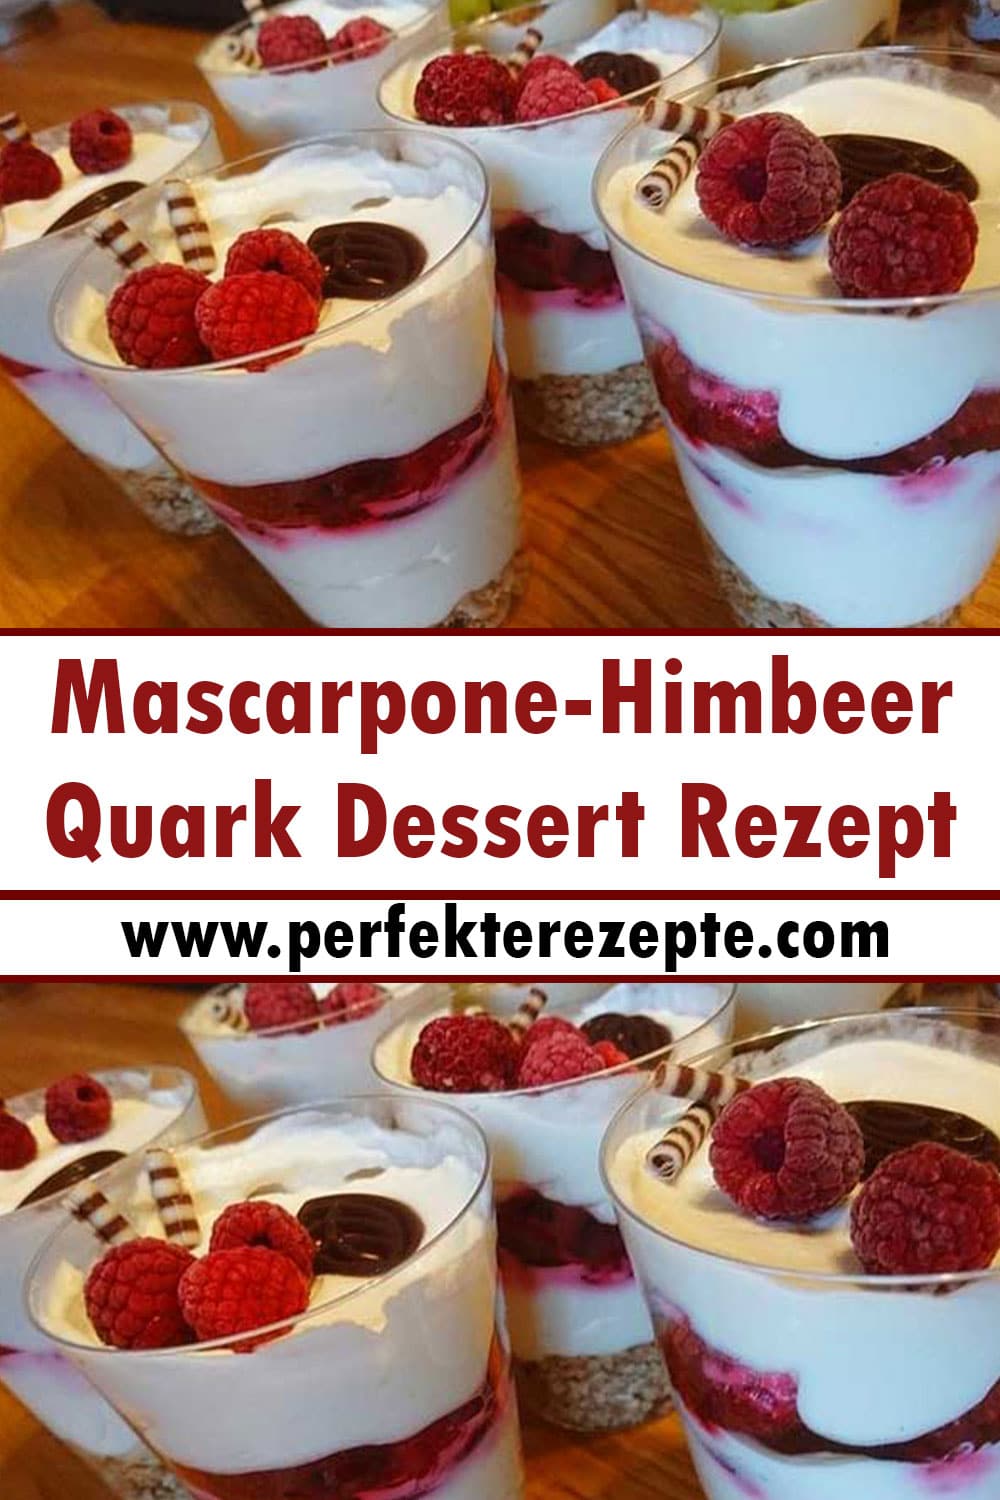 Mascarpone-Himbeer-Quark Dessert Rezept